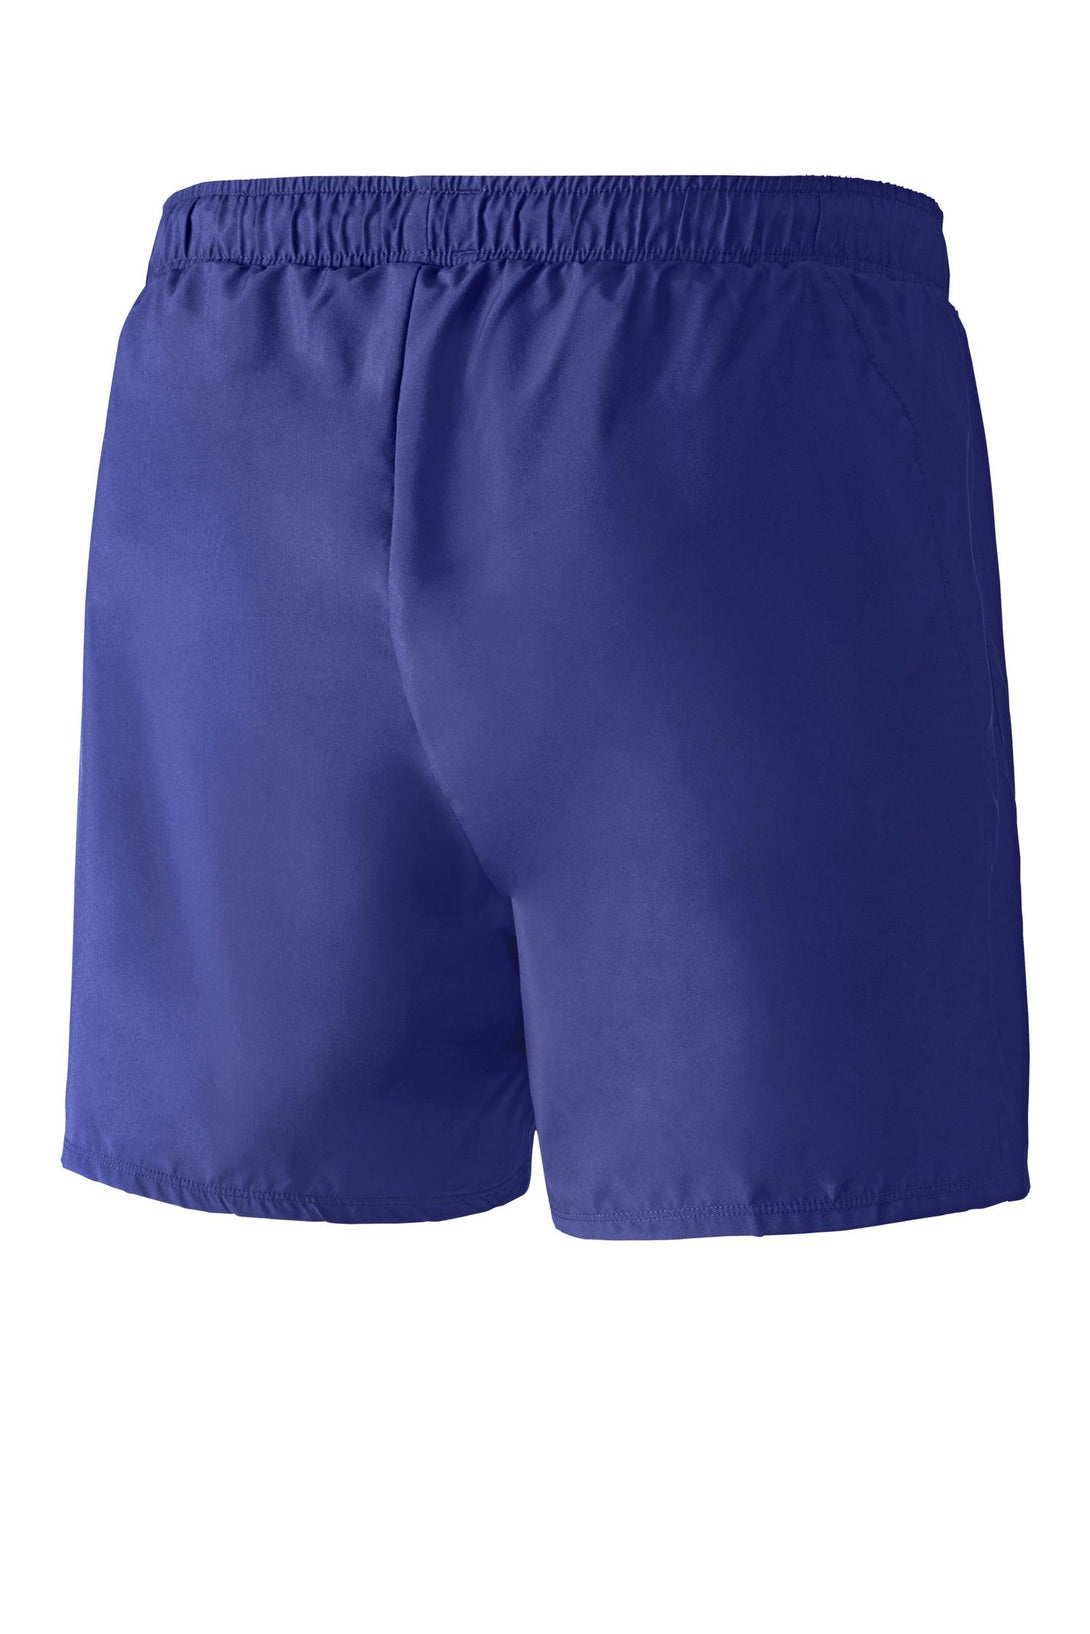 Mizuno Core Square 5.5 Shorts Mens